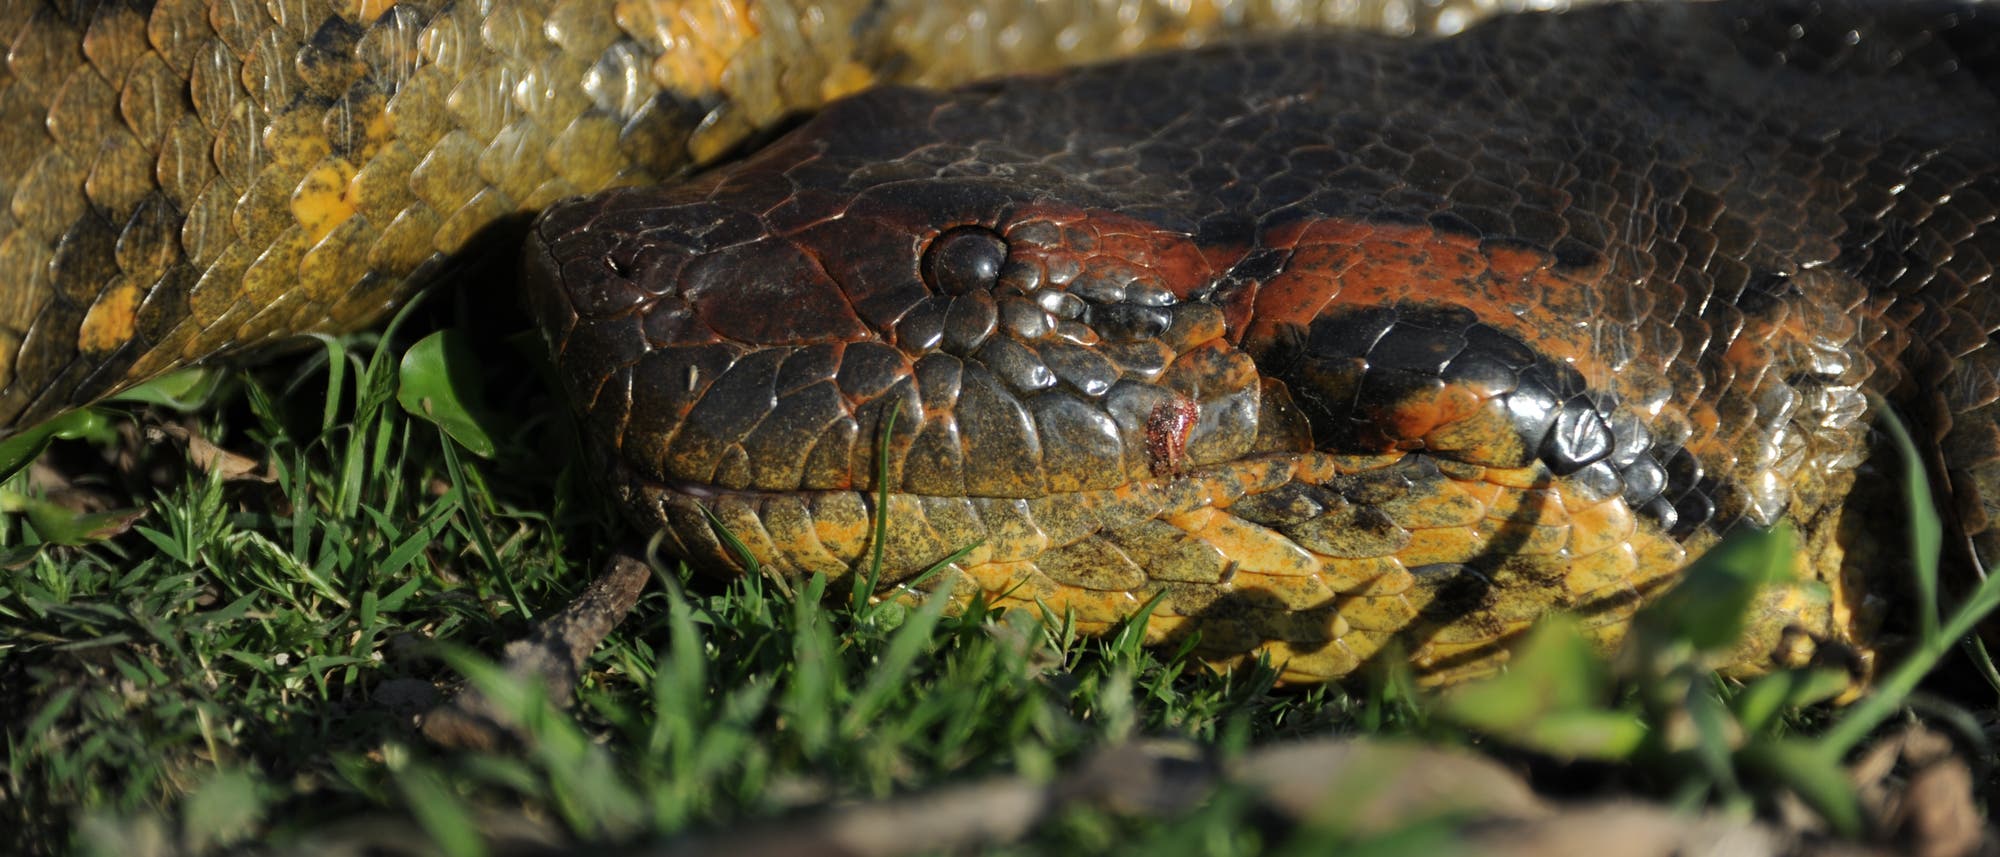 Biodiversidad: los biólogos han descubierto especies de serpientes gigantes en el Amazonas